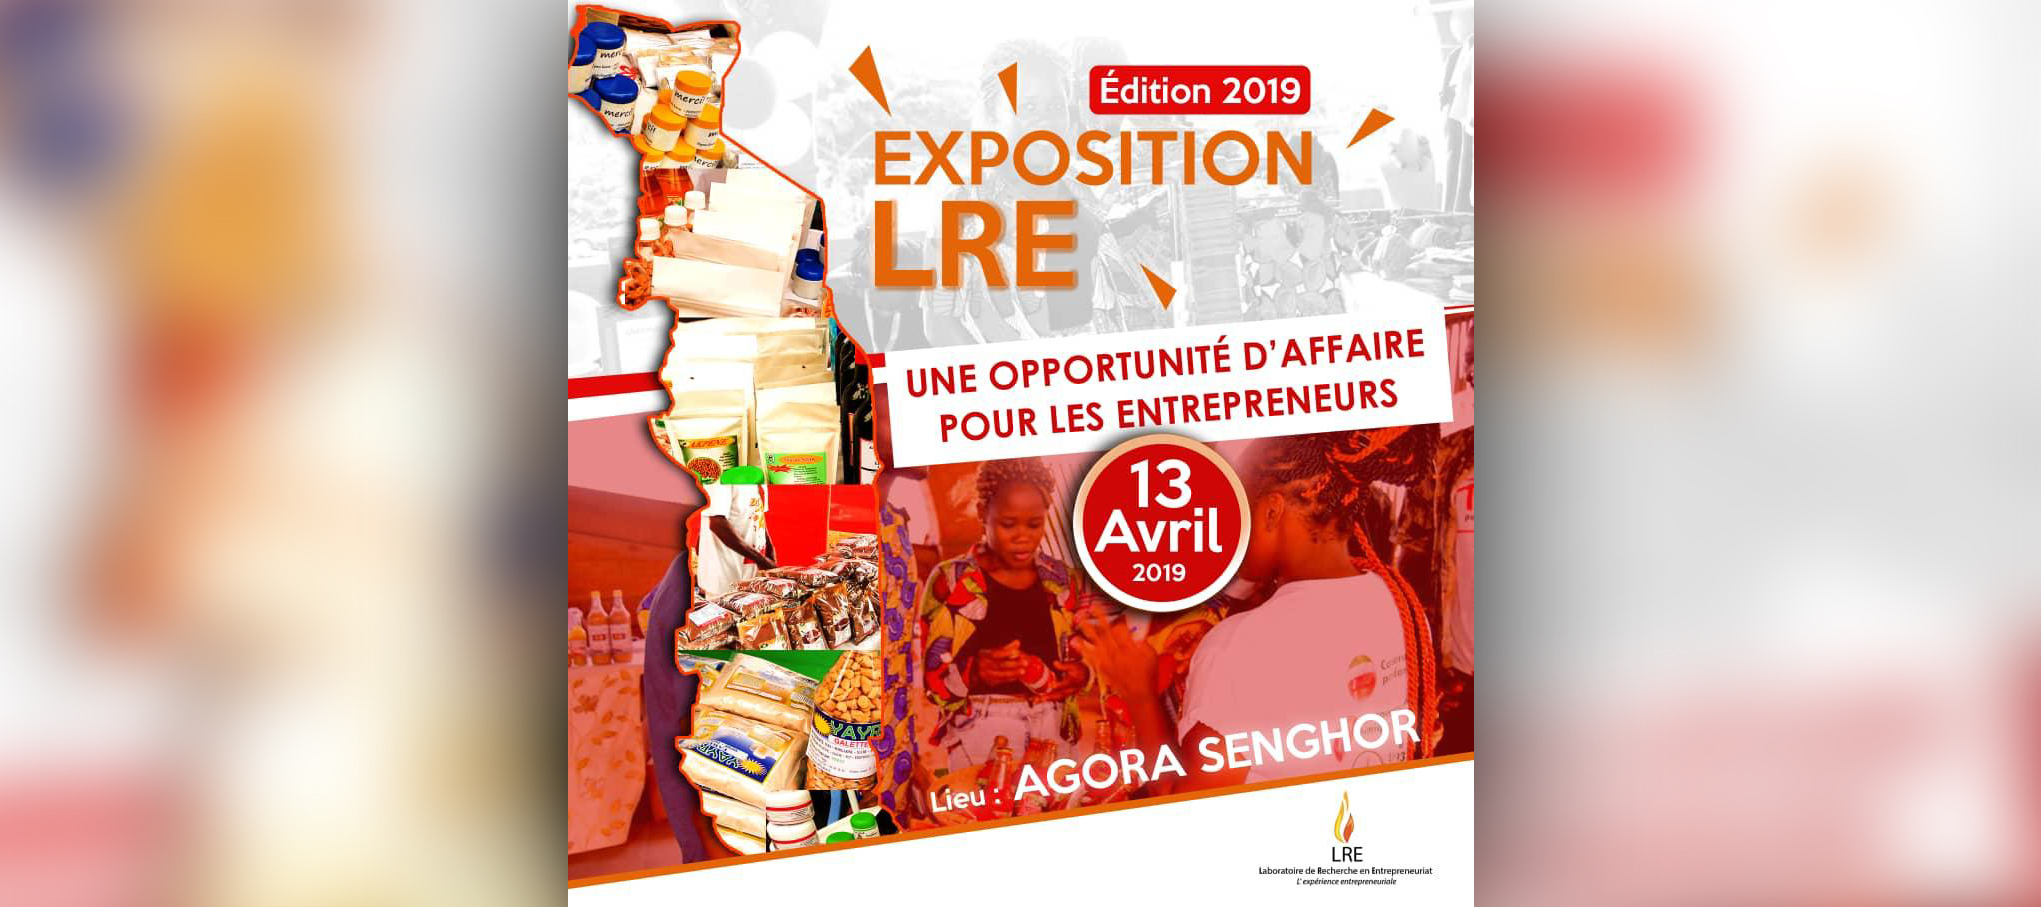 «EXPOSITION LRE», Une opportunité d’affaire pour les Entrepreneurs 